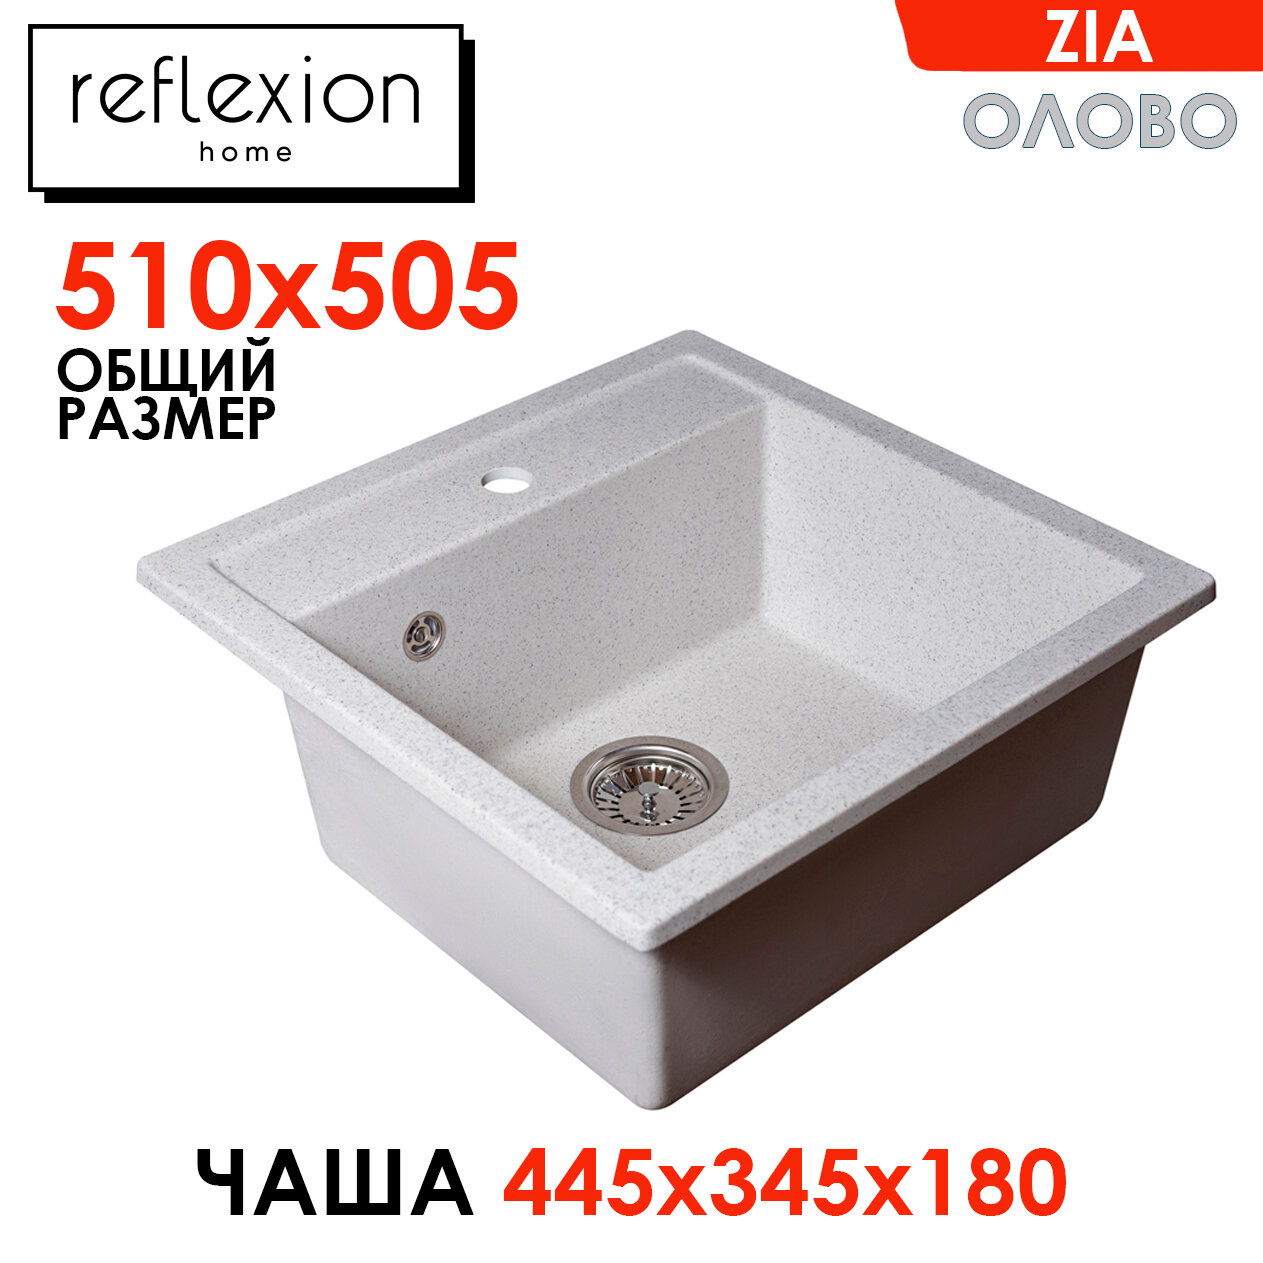 Кухонная мойка (сифон в комплекте) кварцевая врезная прямоугольная 51х50,5мм Reflexion Zia RX1251TN, цвет - олово